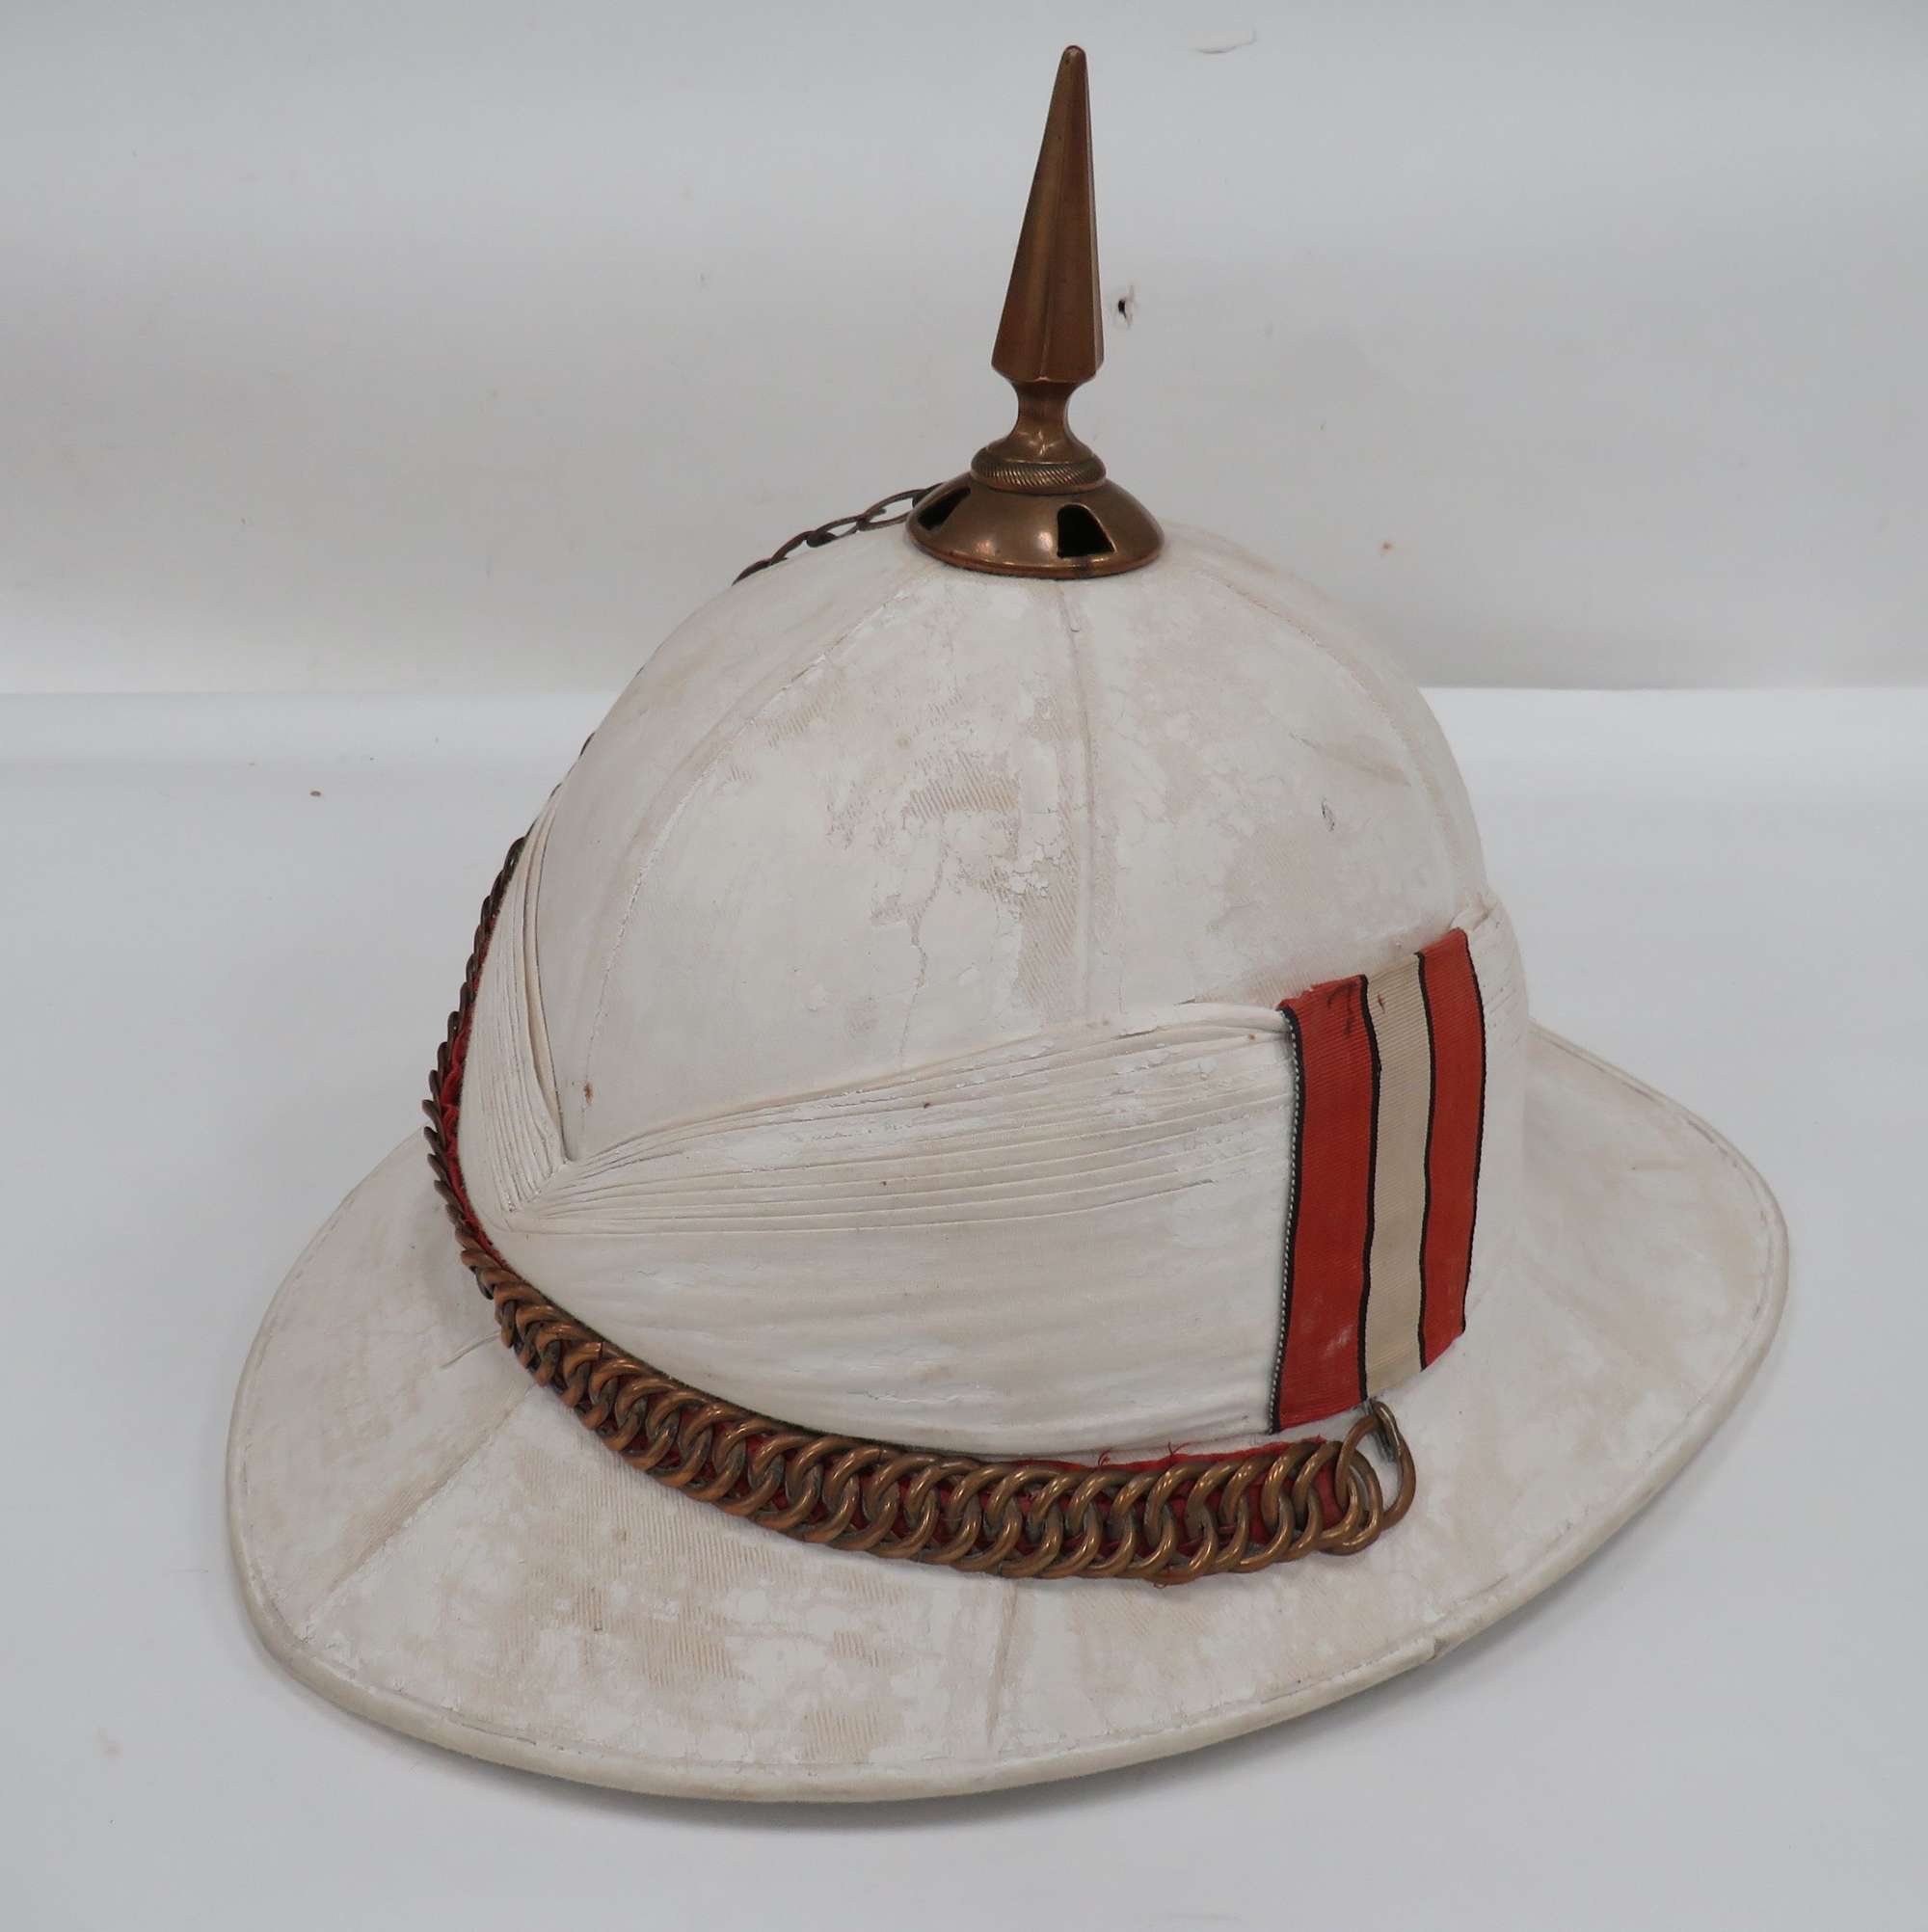 Interwar Foreign Service Dress Helmet